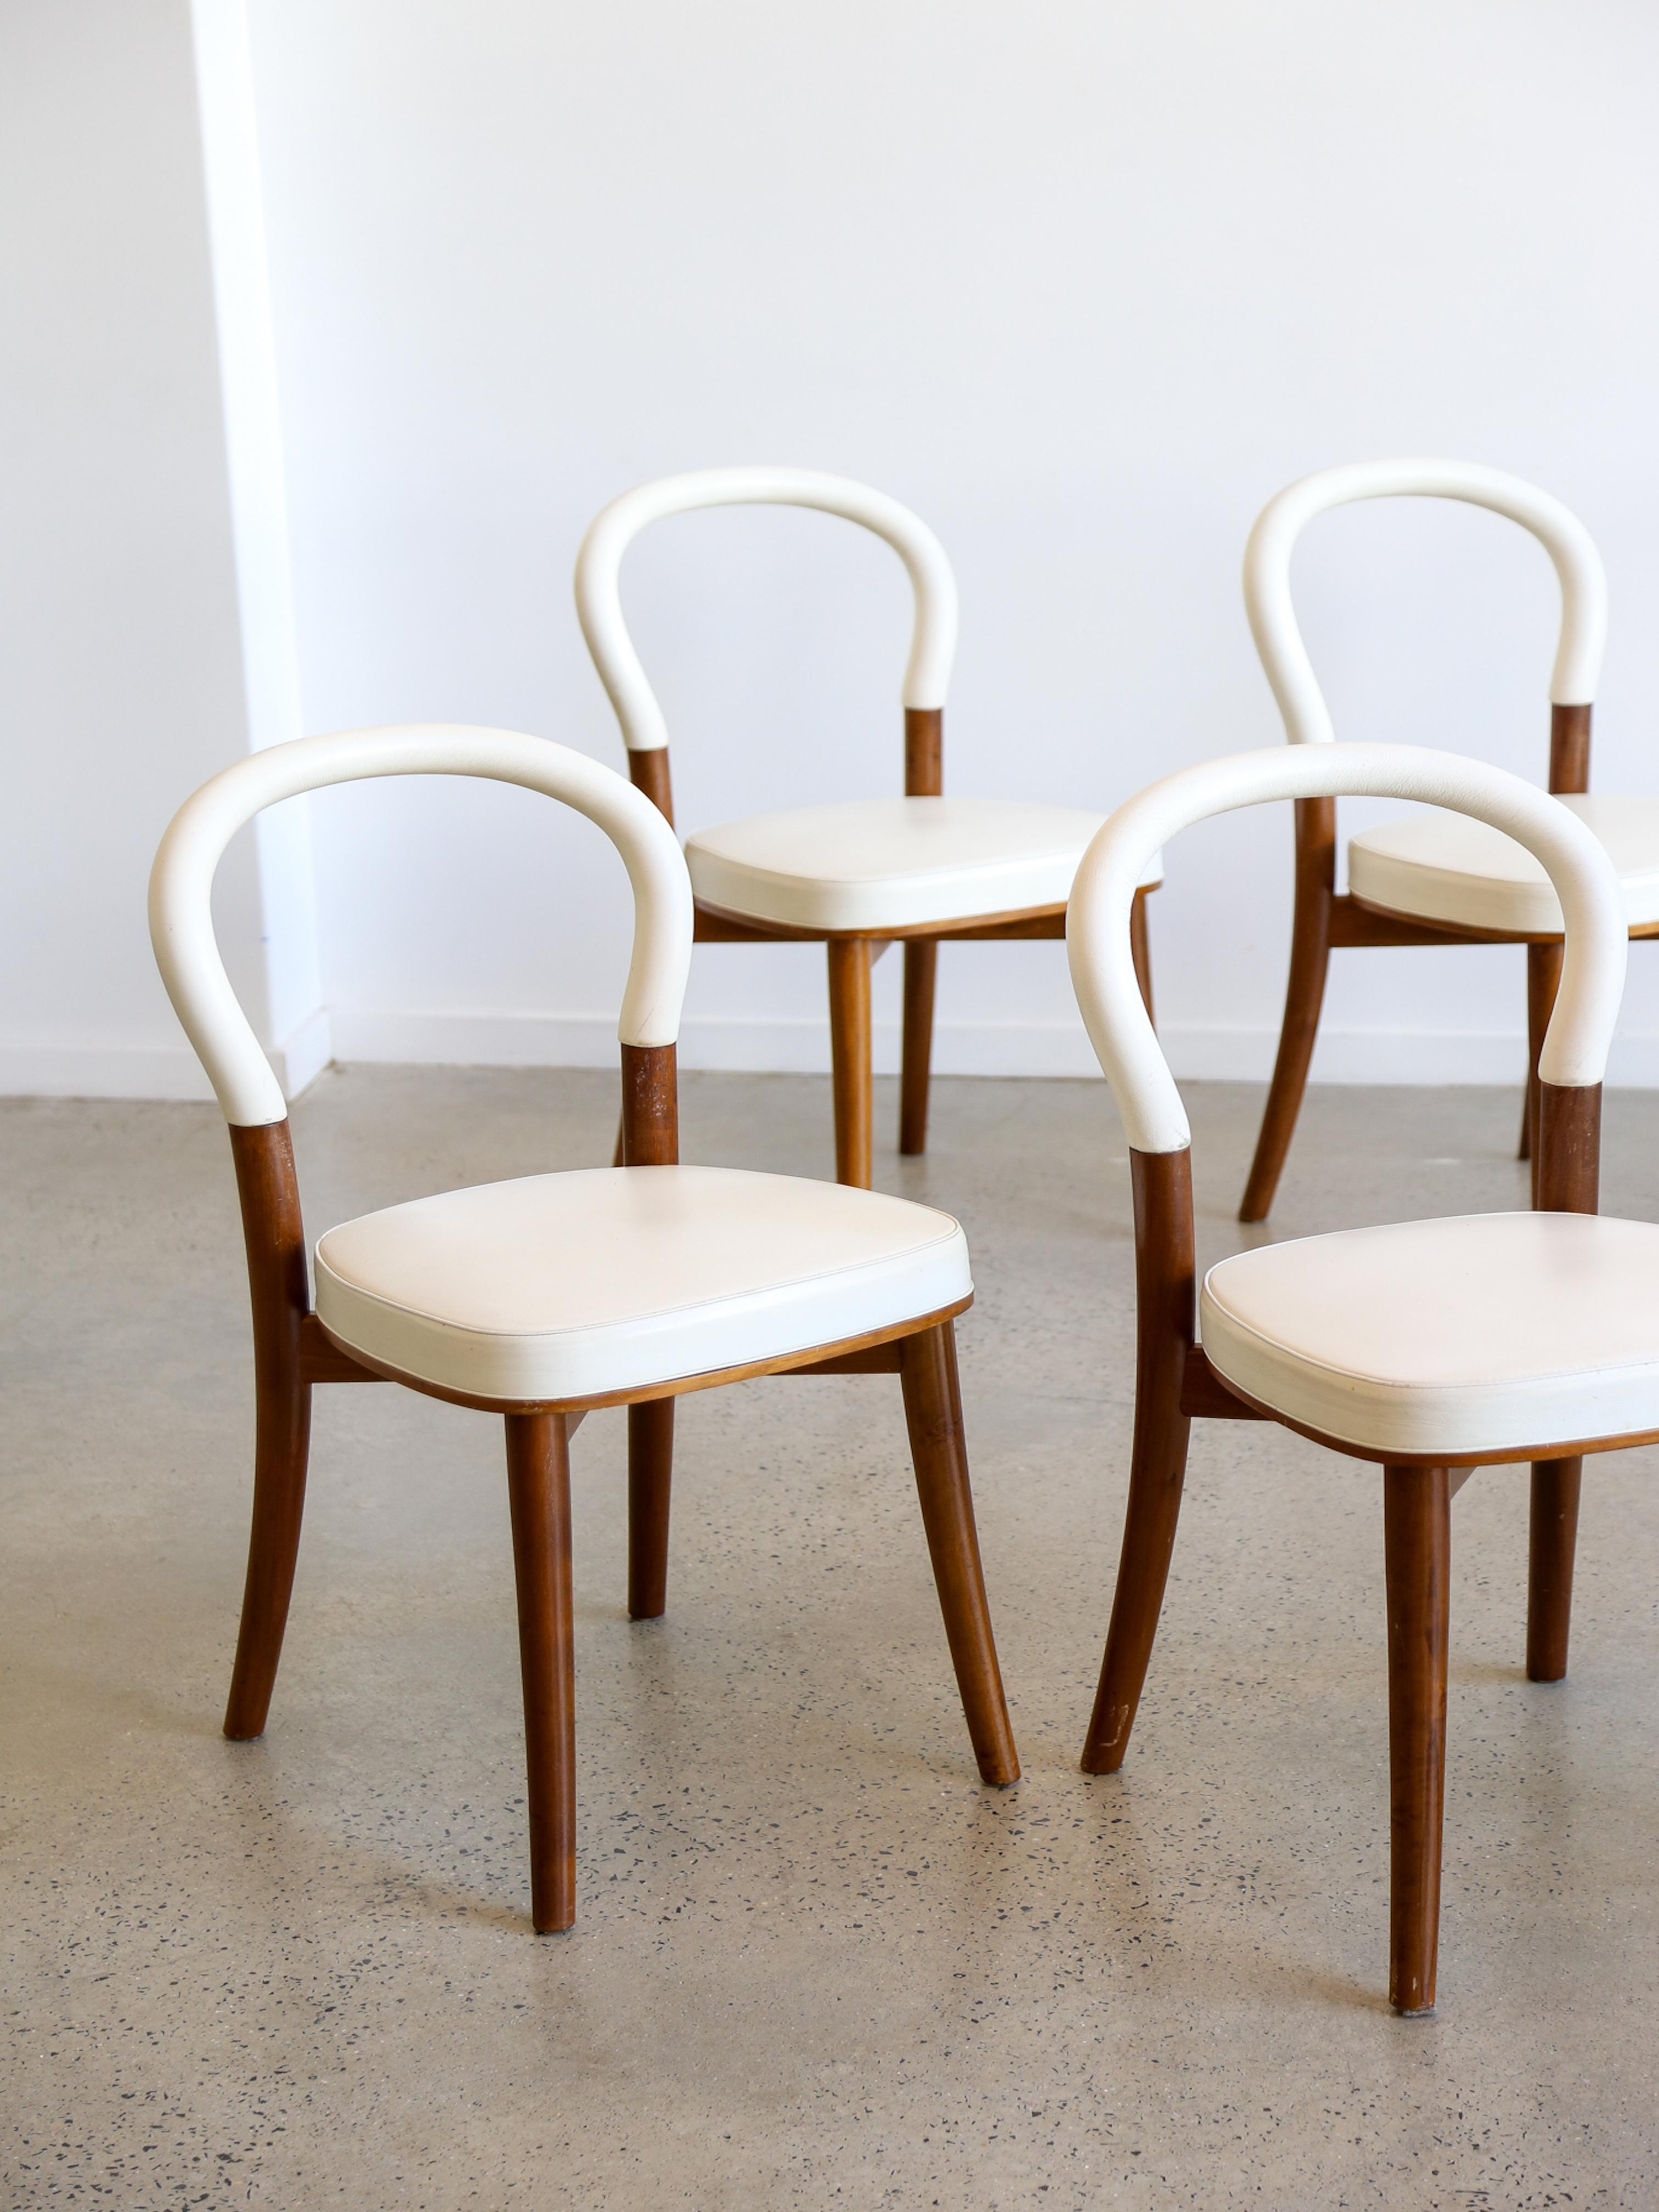 La chaise de Göteborg est l'interprétation poétique des idées rationalistes par Erik Gunnar Asplund. La chaise a été commandée pour l'extension de l'hôtel de ville de Göteborg, en Suède, dont les salles chaleureuses et lambrissées sont évoquées dans